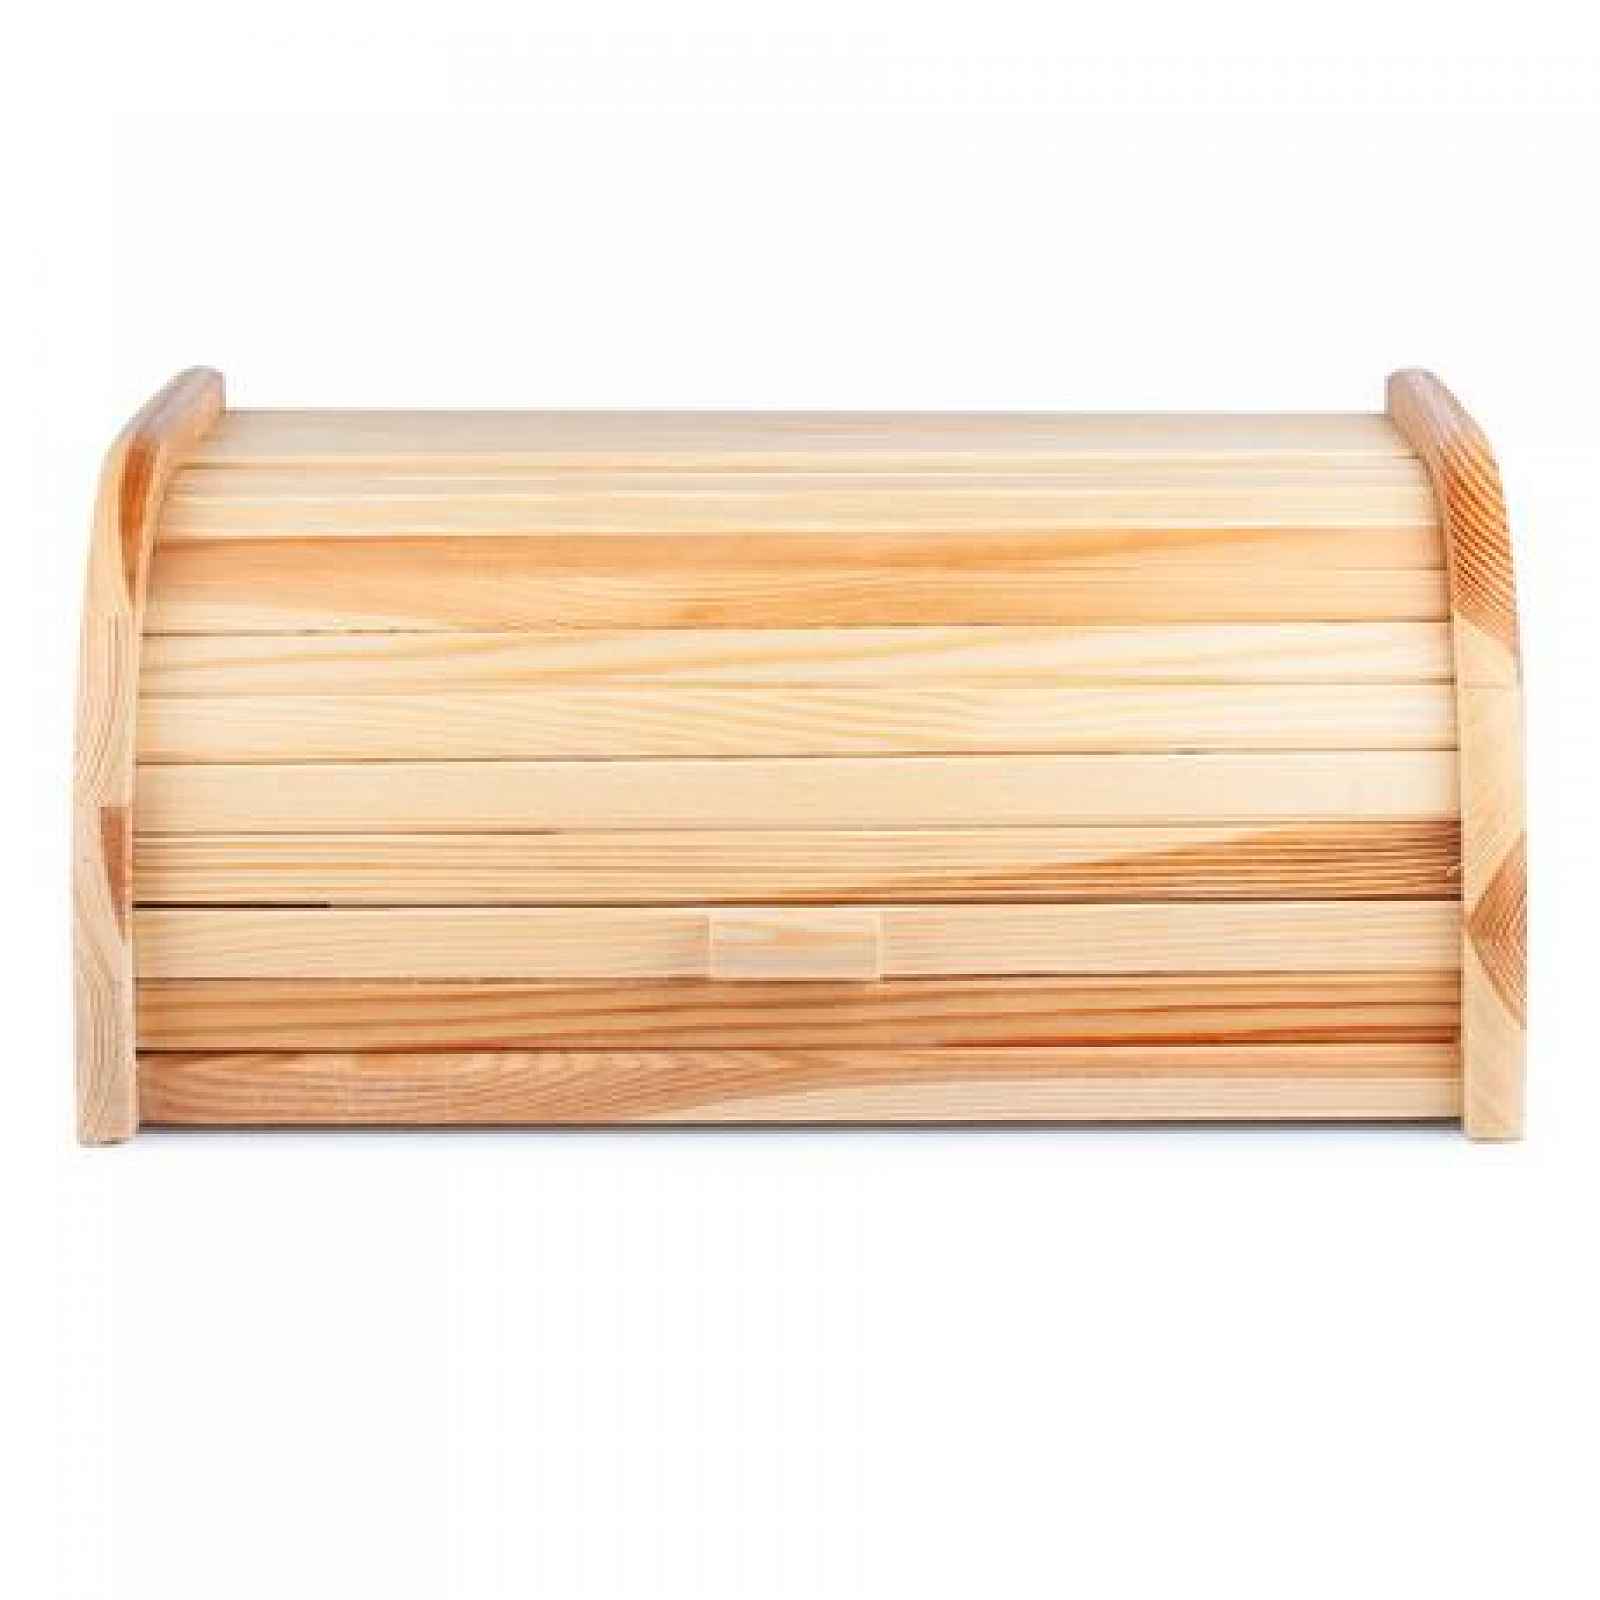 TORO Dřevěná chlebovka 29x39cm